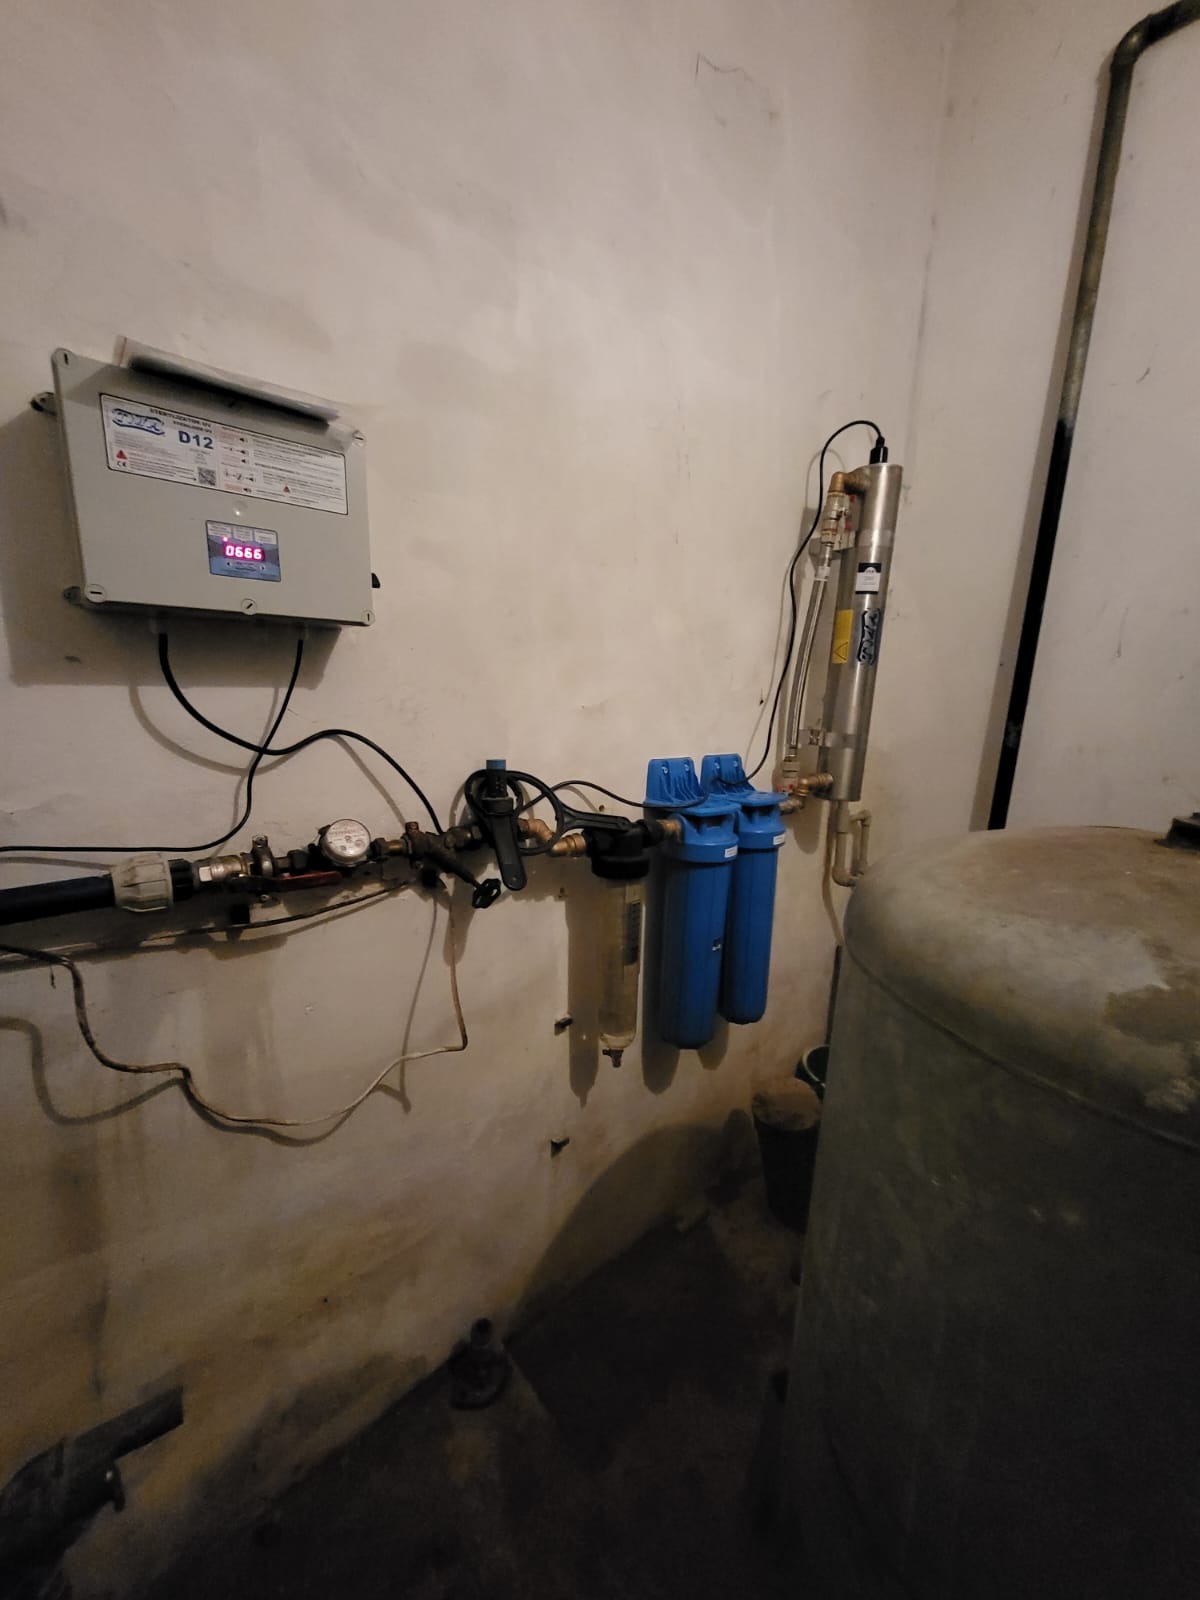 Lampa bakteriobójcza UV do wody TMA D12 montaż w Śleszowicach dla domu jednorodzinnego